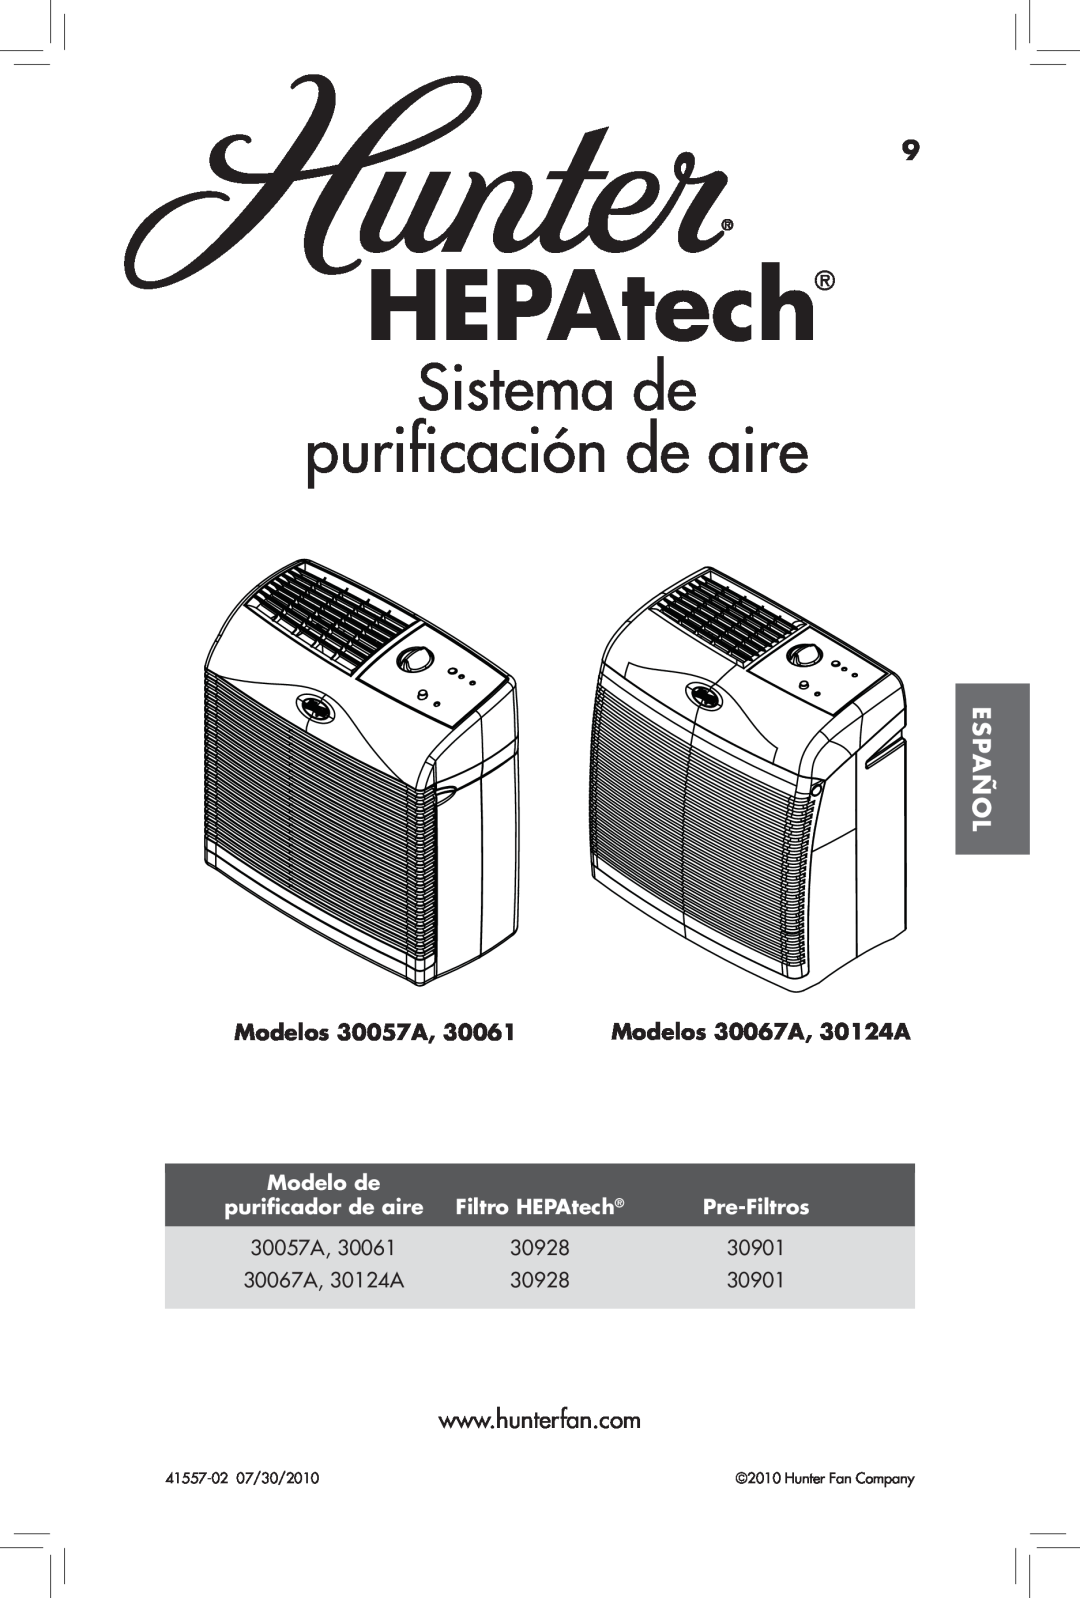 Hunter Fan 30061 Sistema de purificación de aire, Español, Modelos 30057A, Modelos 30067A, 30124A, HEPAtech, Modelo de 